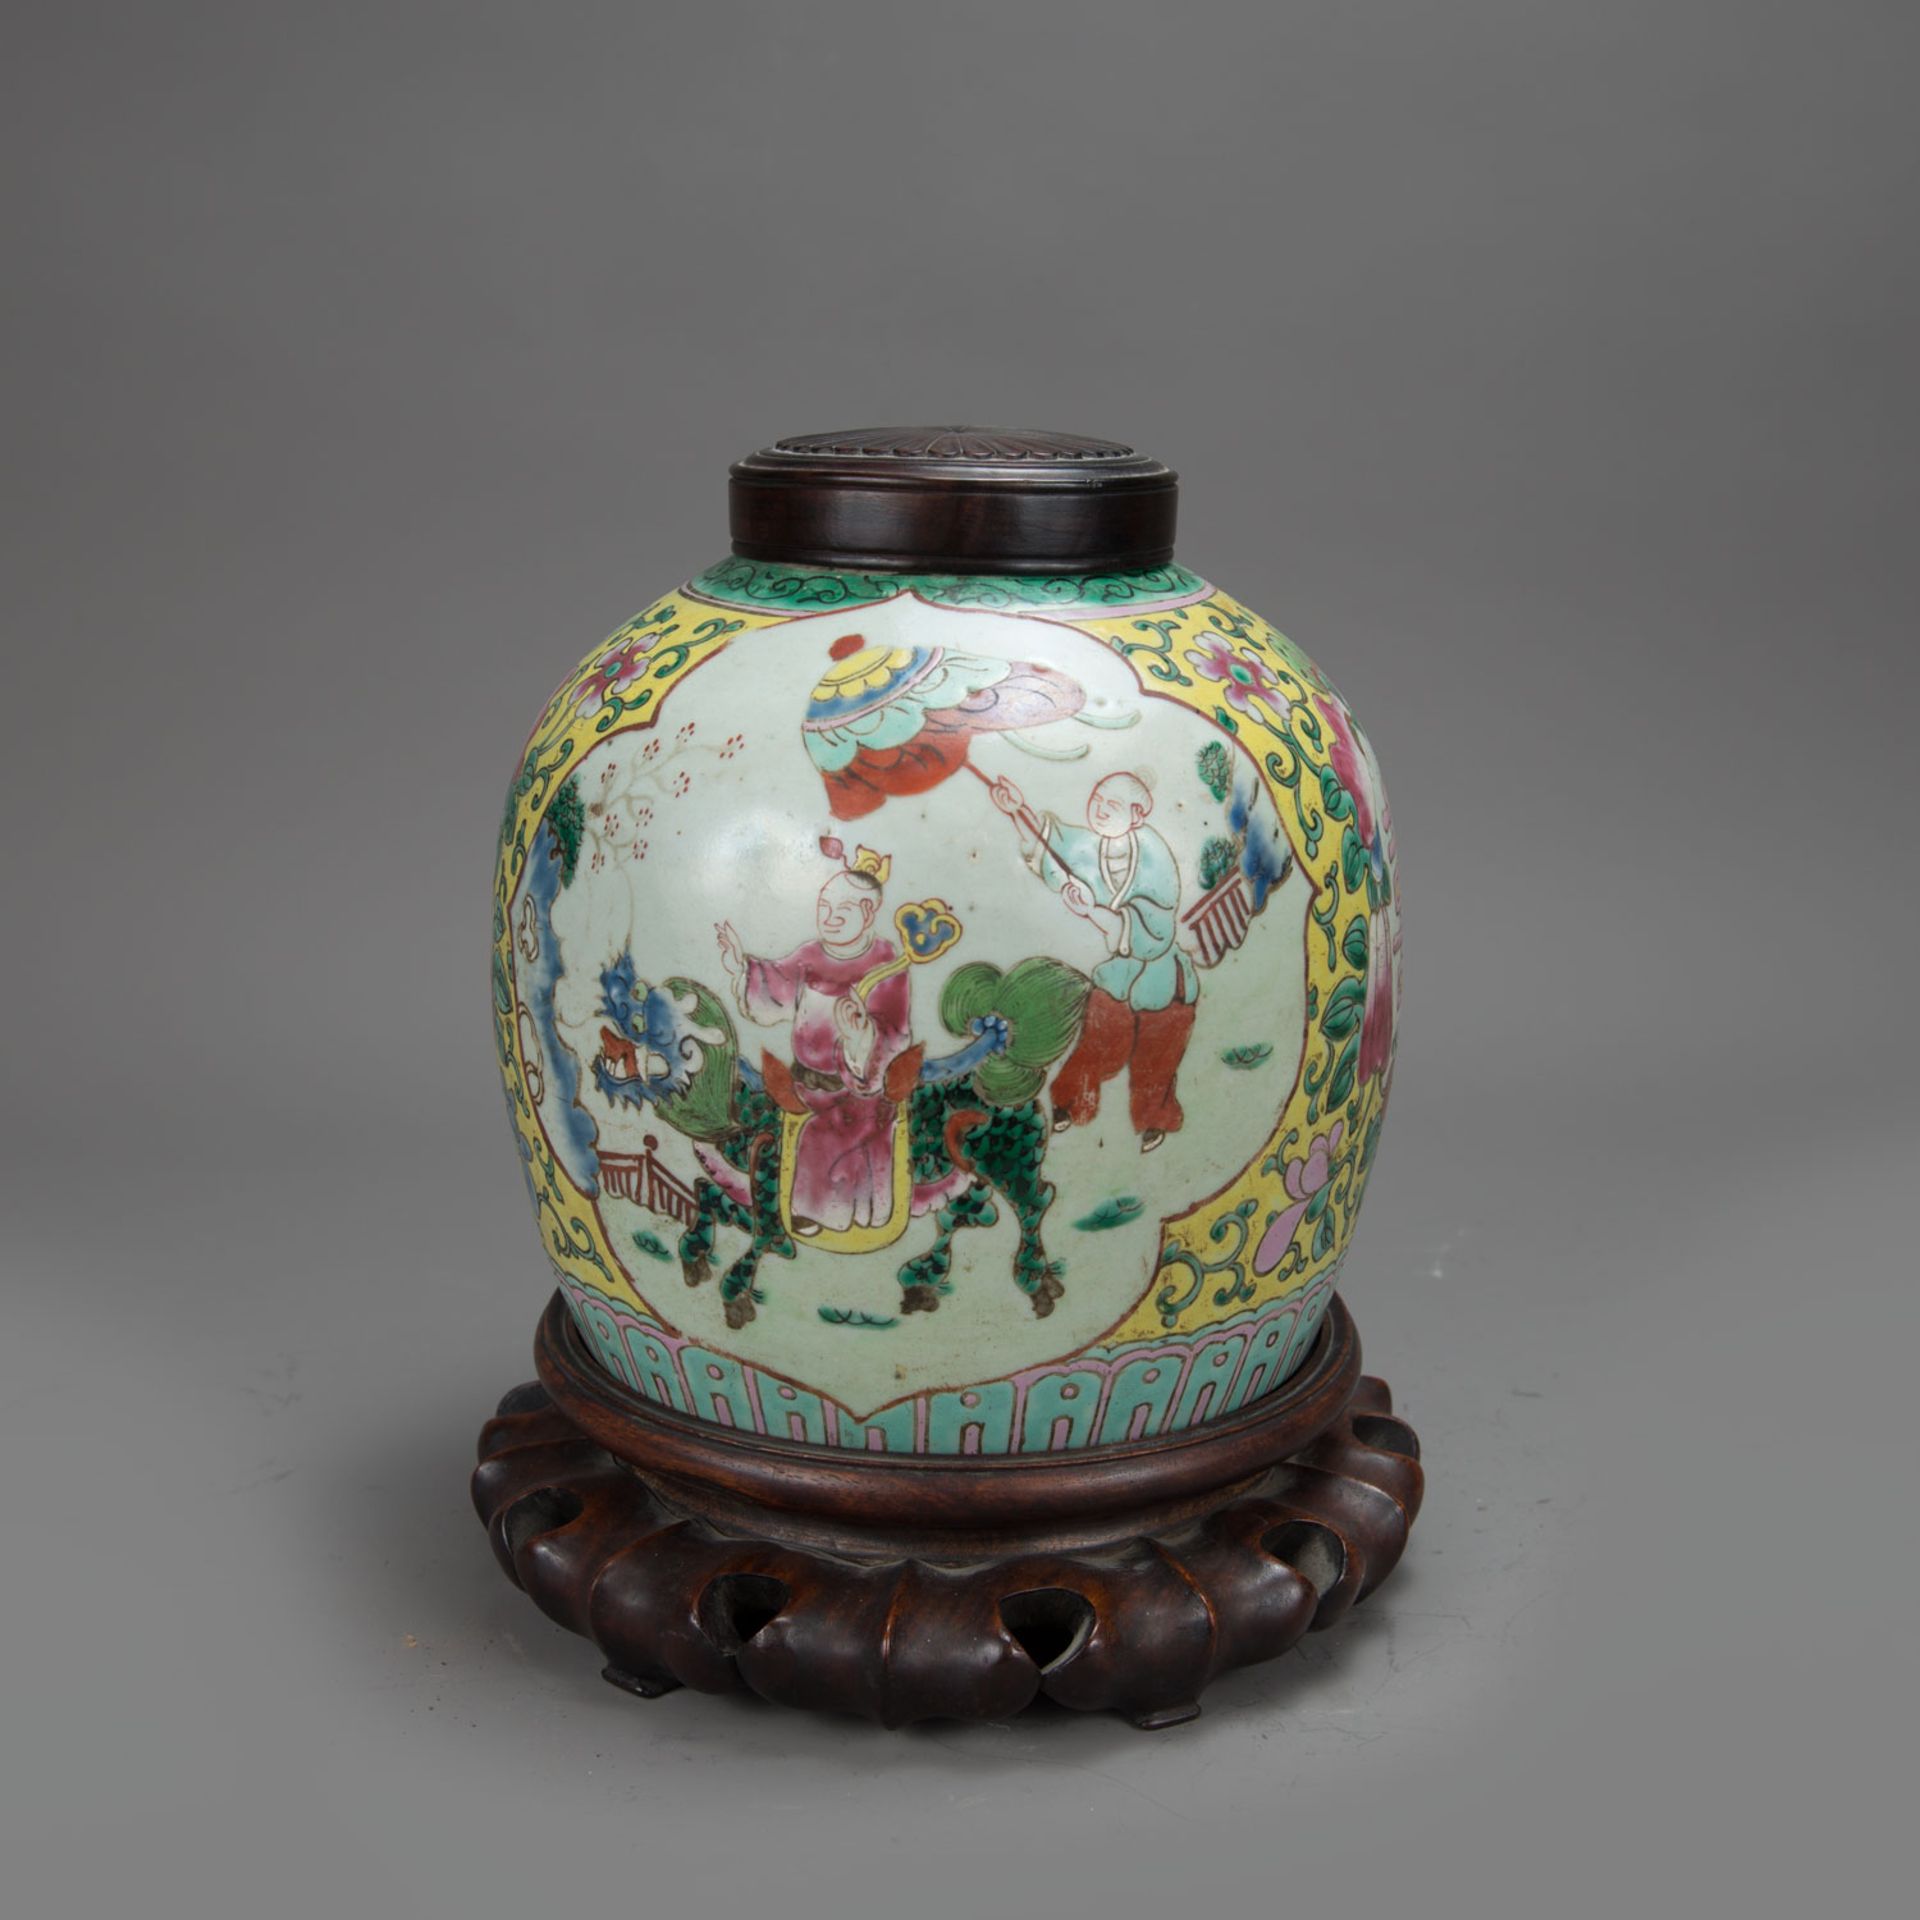 Chinese Porcelain Vase - Image 2 of 3